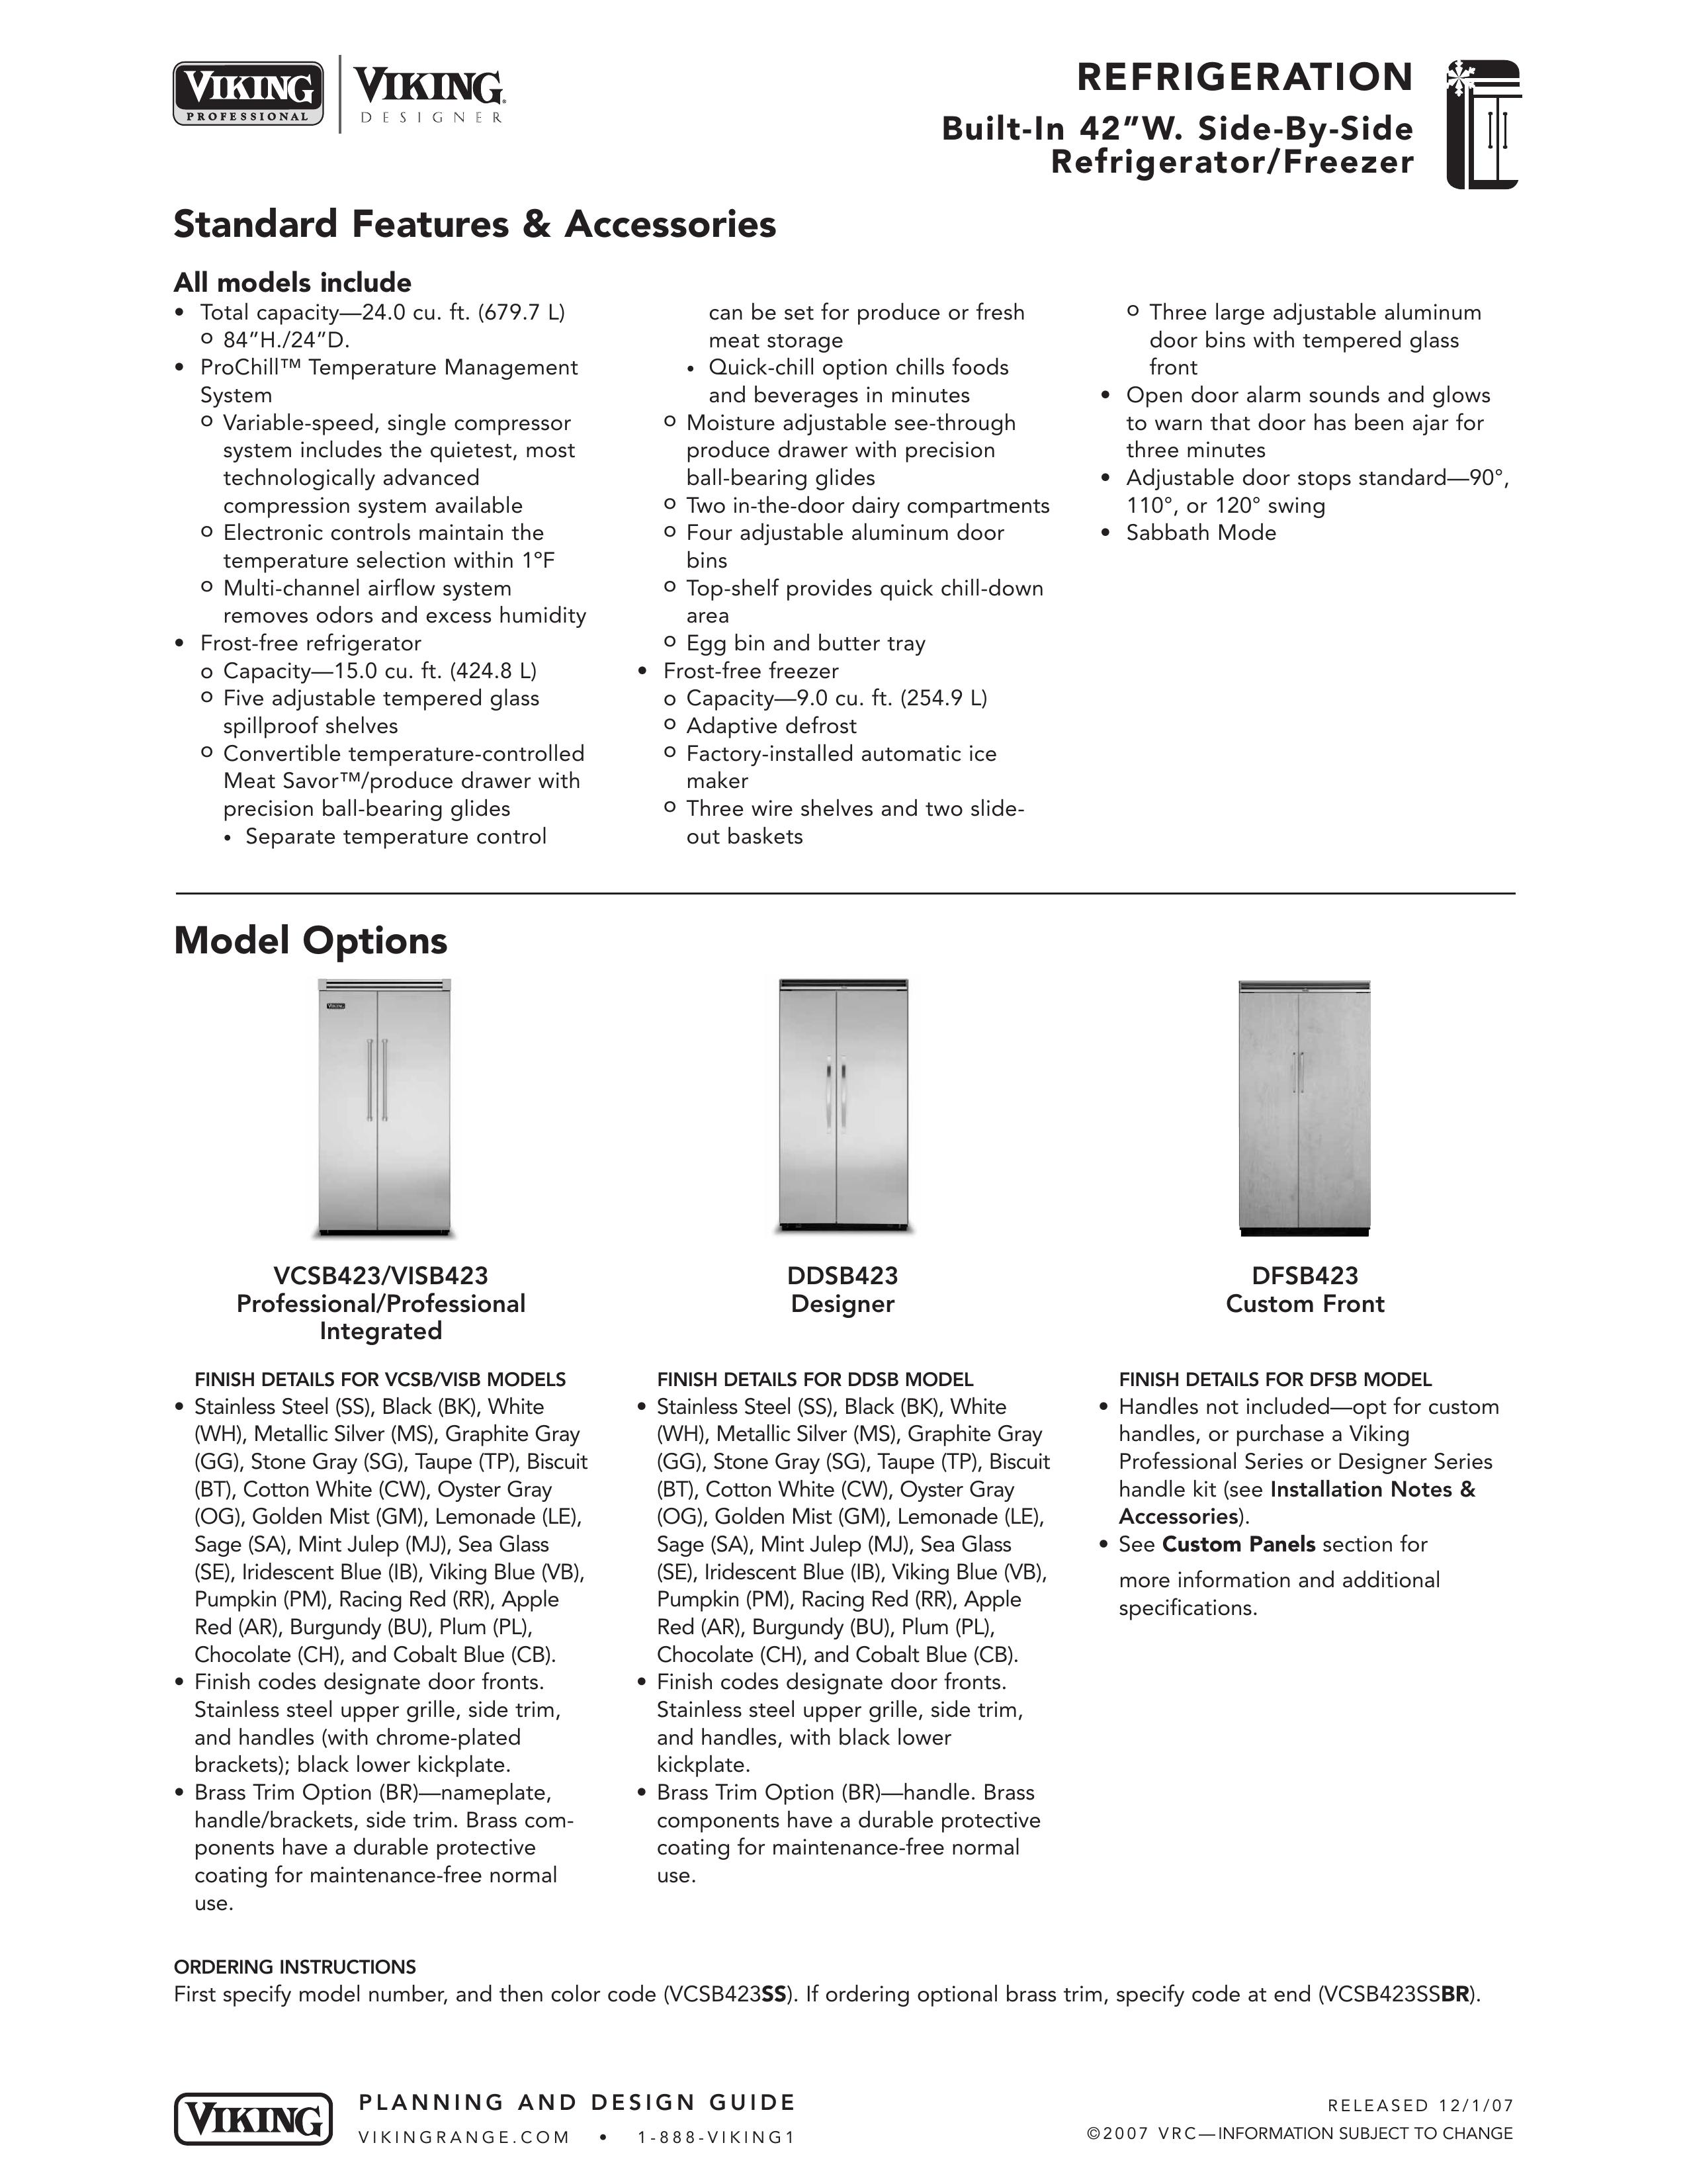 Viking DDSB423 Refrigerator User Manual